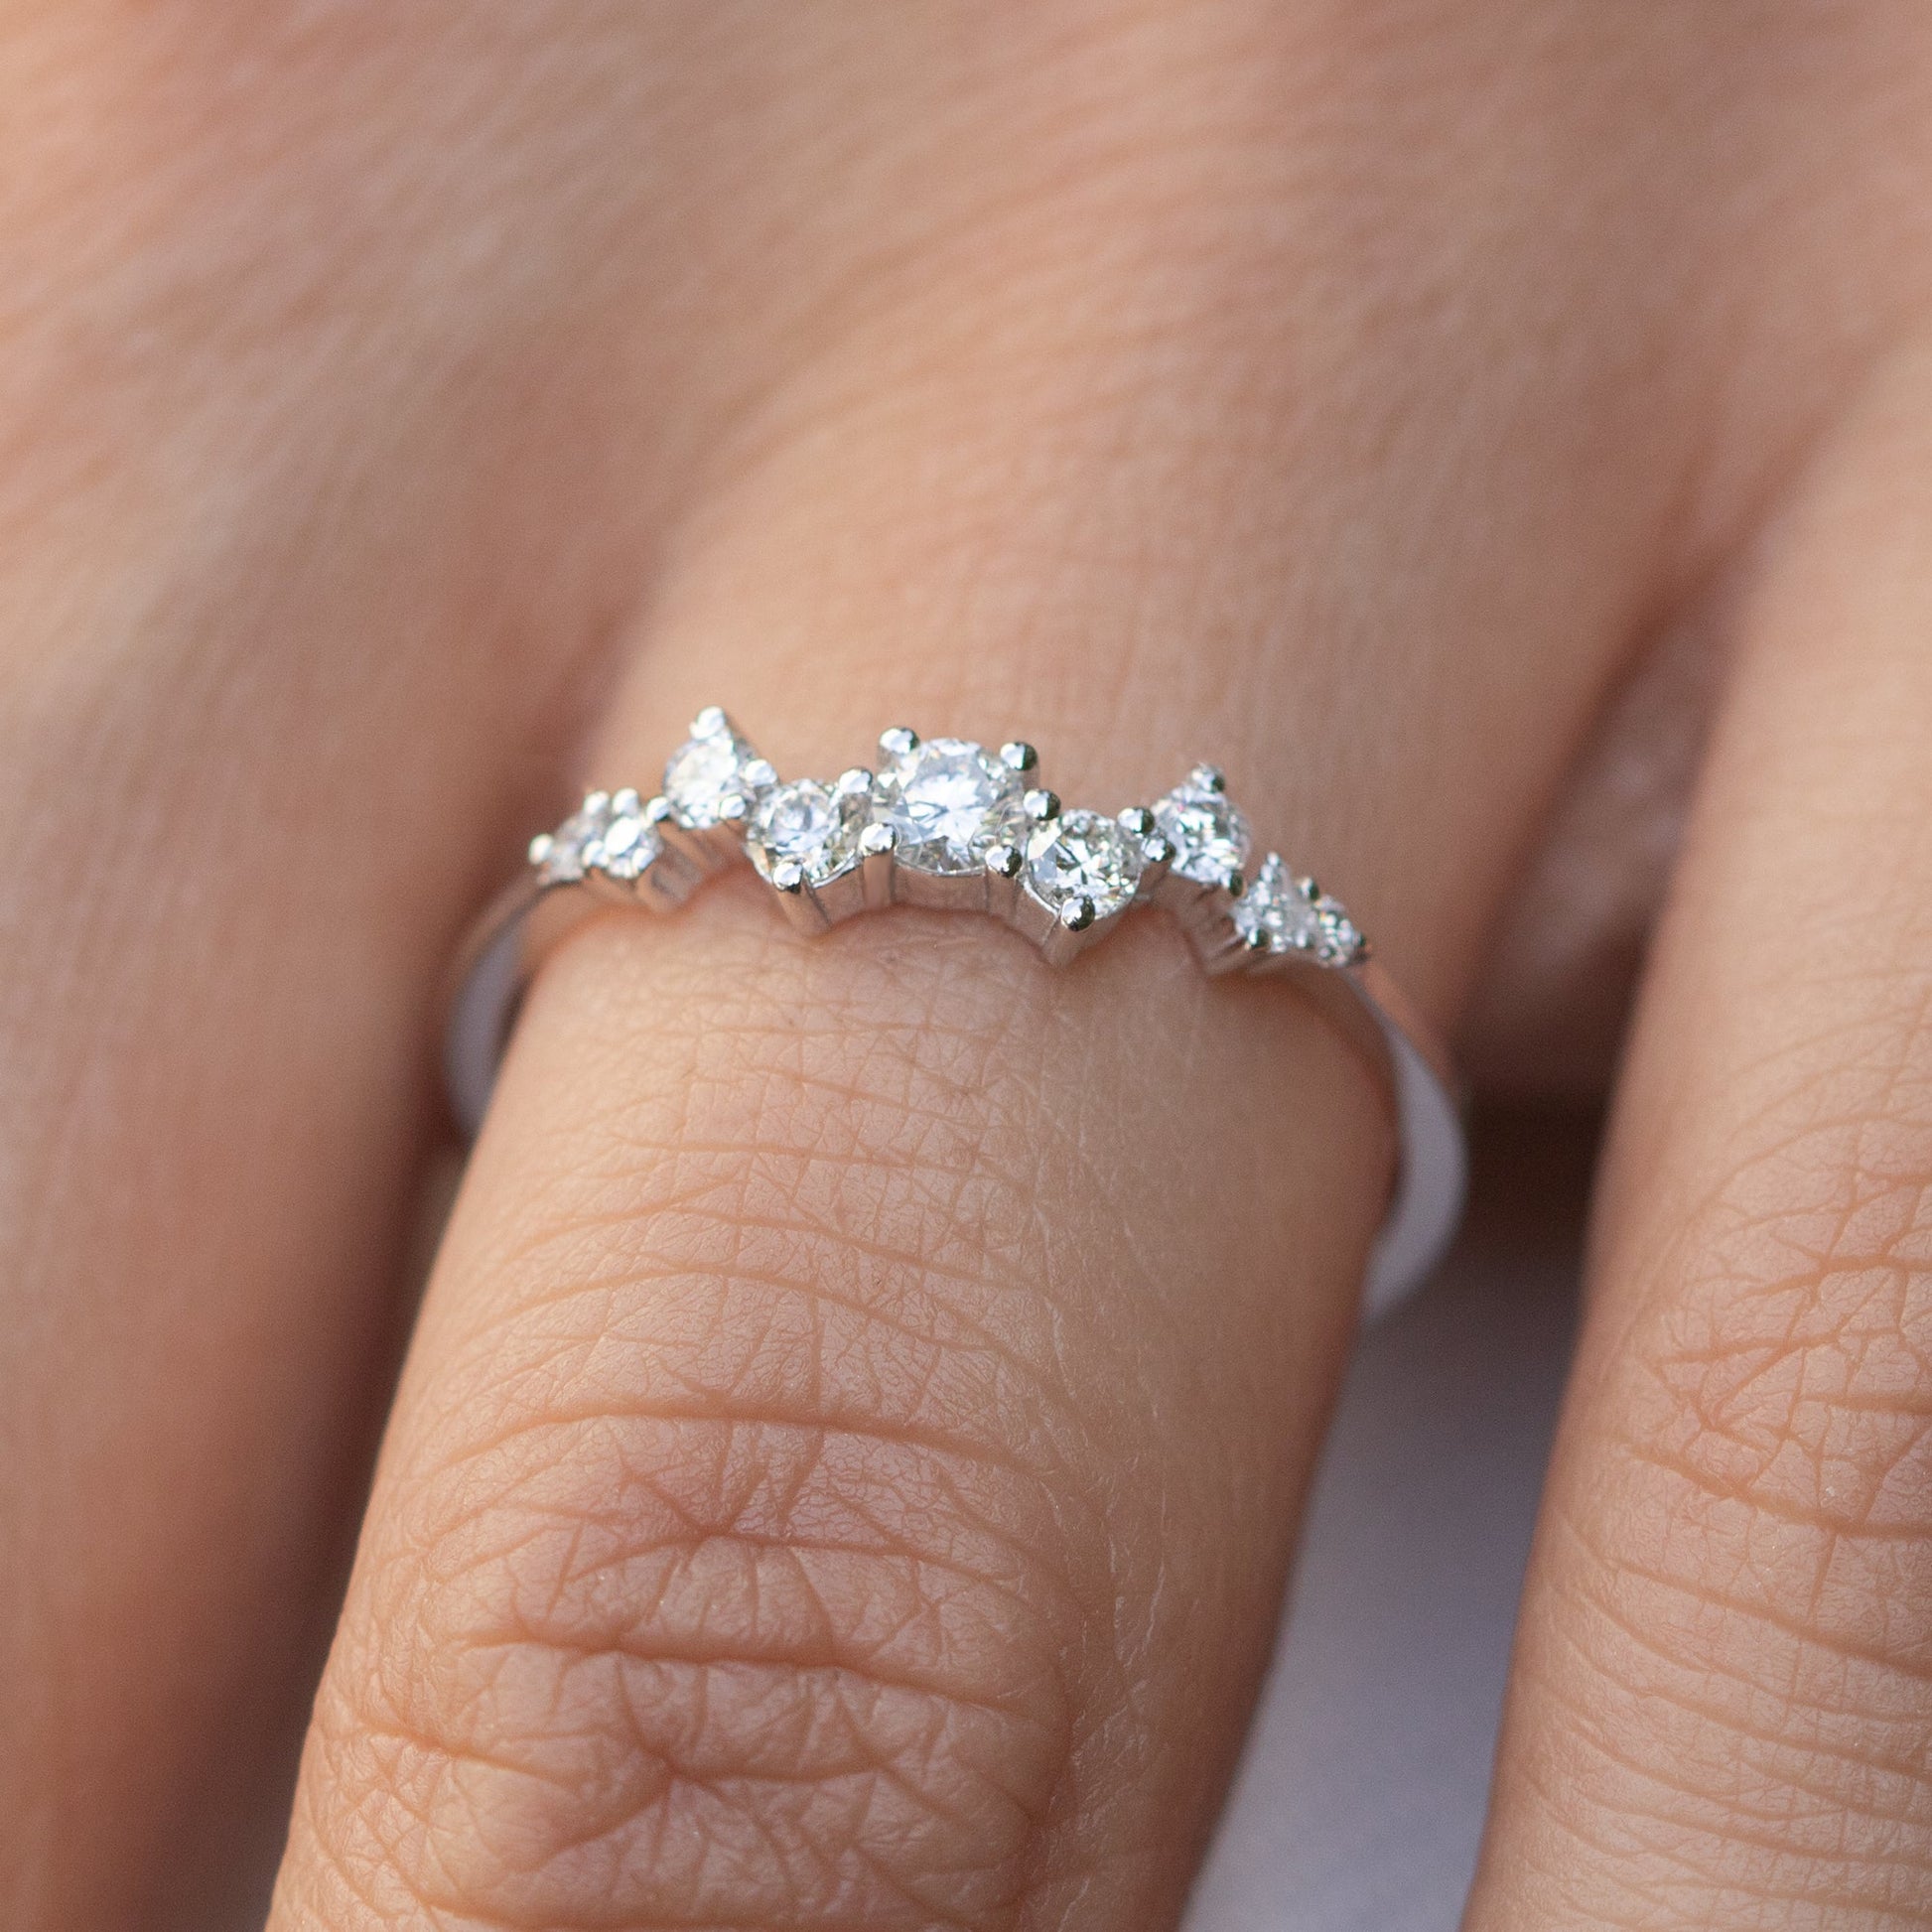  14K White Gold Diamond Cluster Ring  Shop online from Artisan Brands